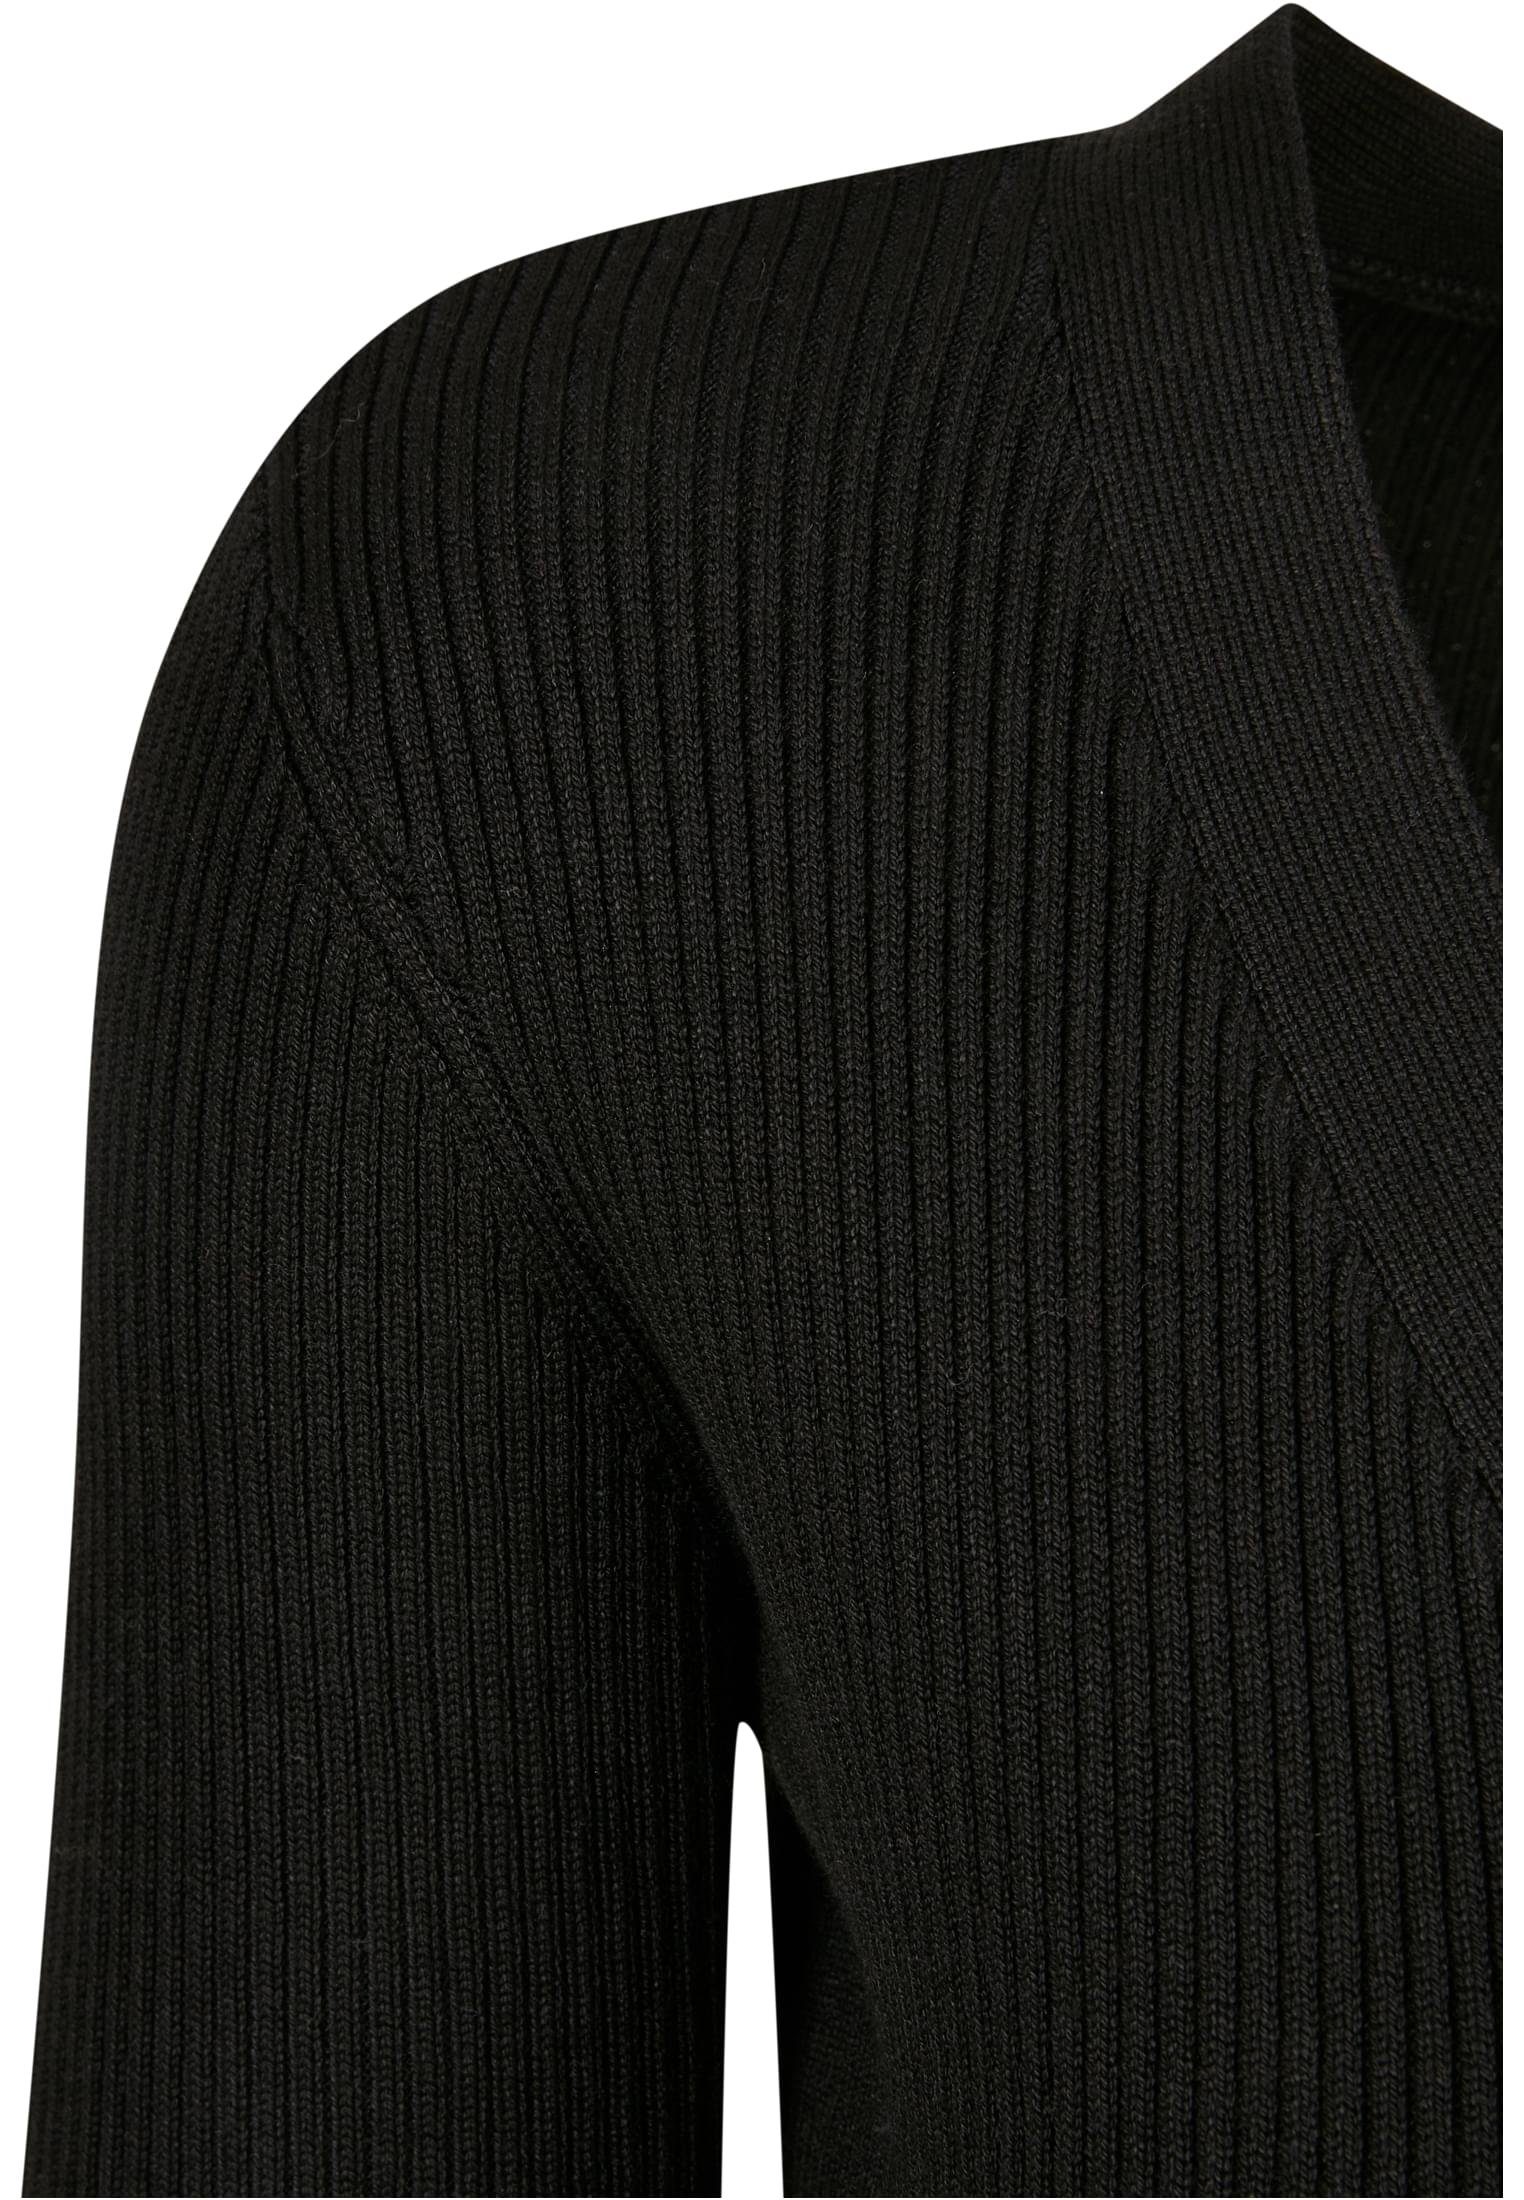 (1-tlg) Cardigan URBAN Knit Ladies Wrapped Cardigan CLASSICS black Rib Damen